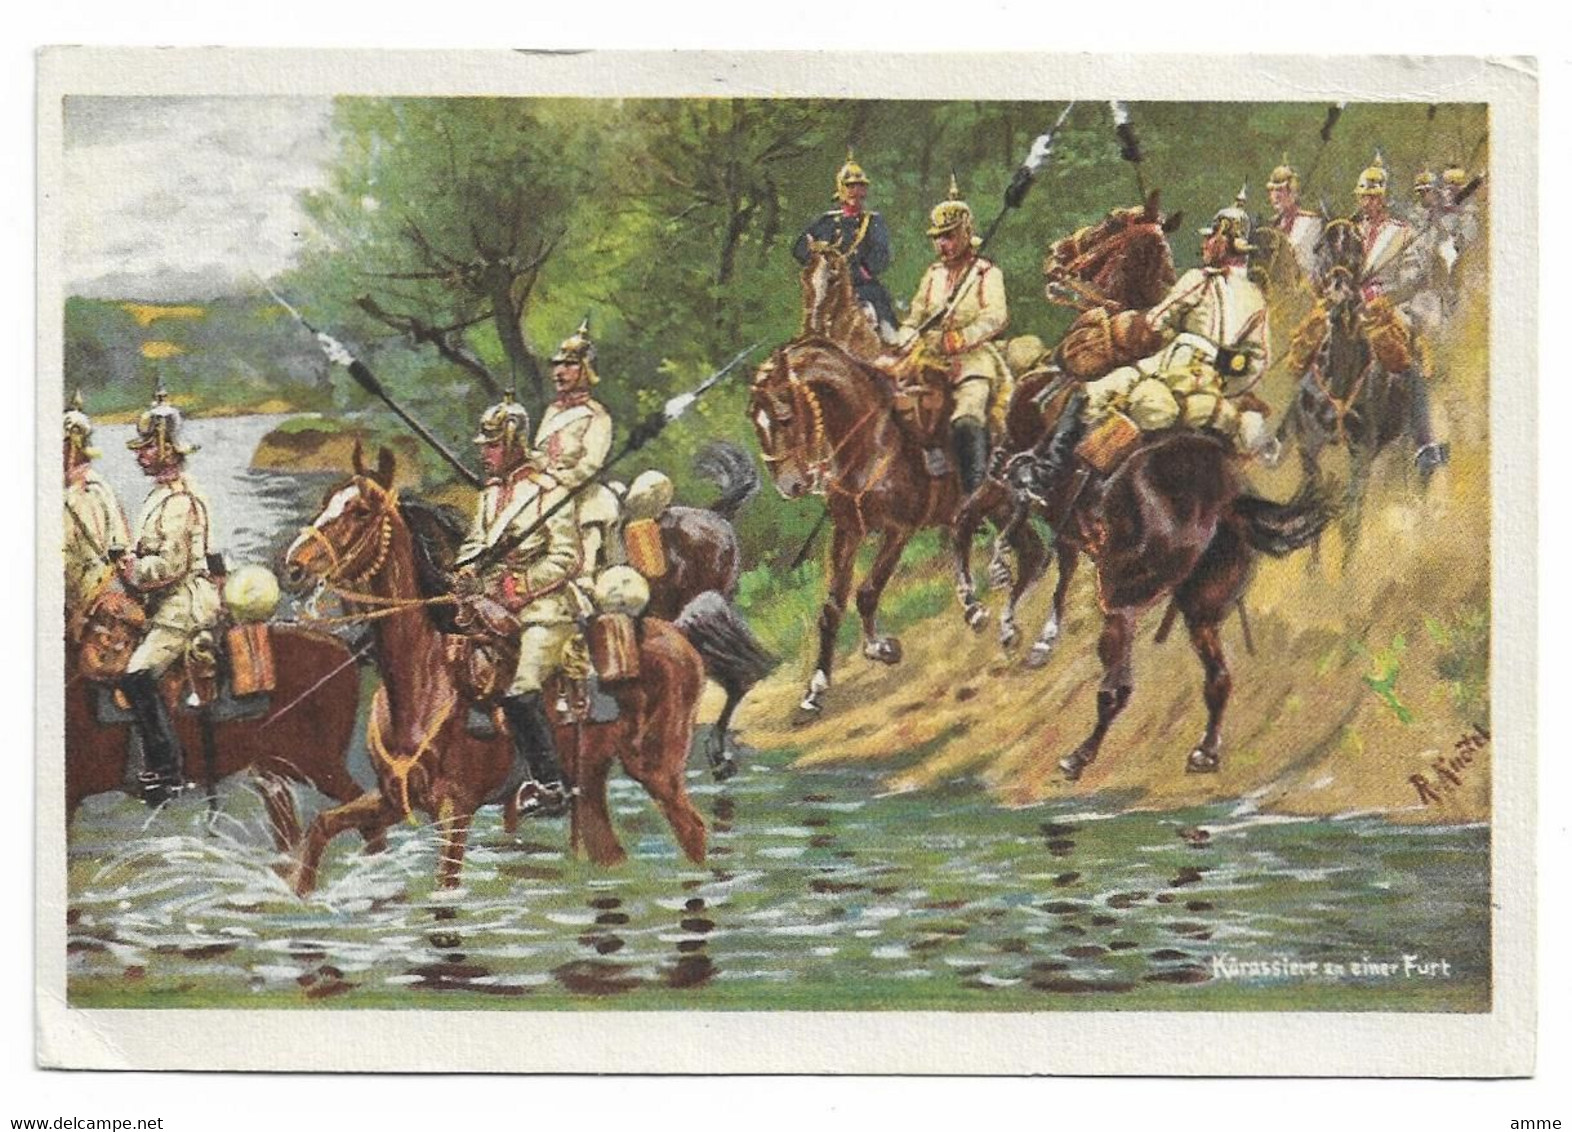 Vintage Postcard  *  R. Knoetel -  Kürassiere An Einer Furt (CPM)  (Militair - Oorlog - Guerre) - Knoetel, R.